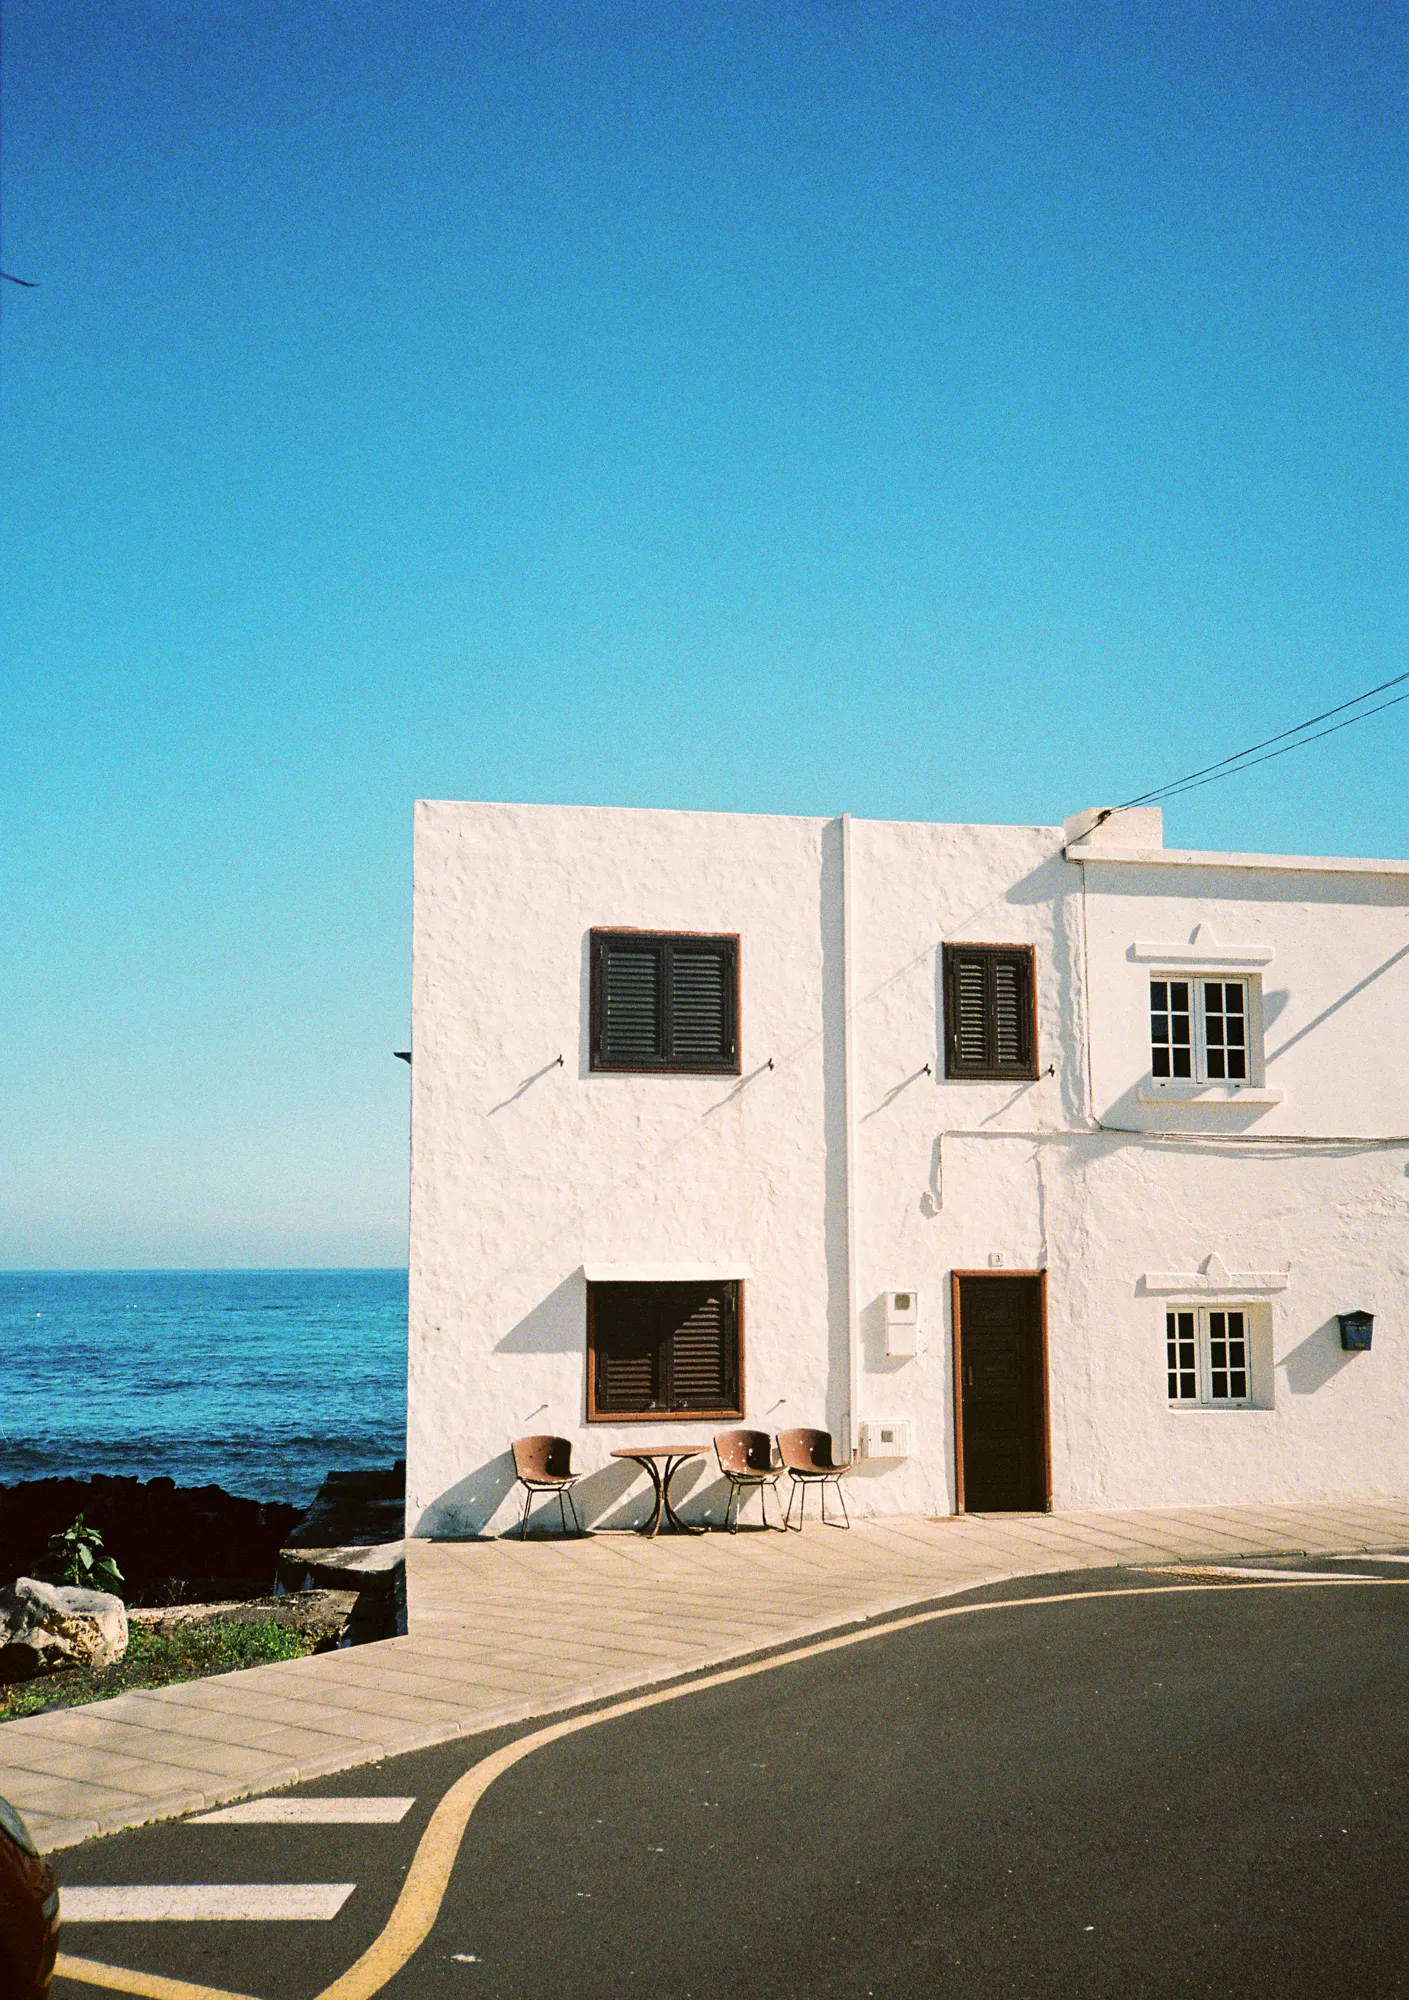 Spain, Lanzarote